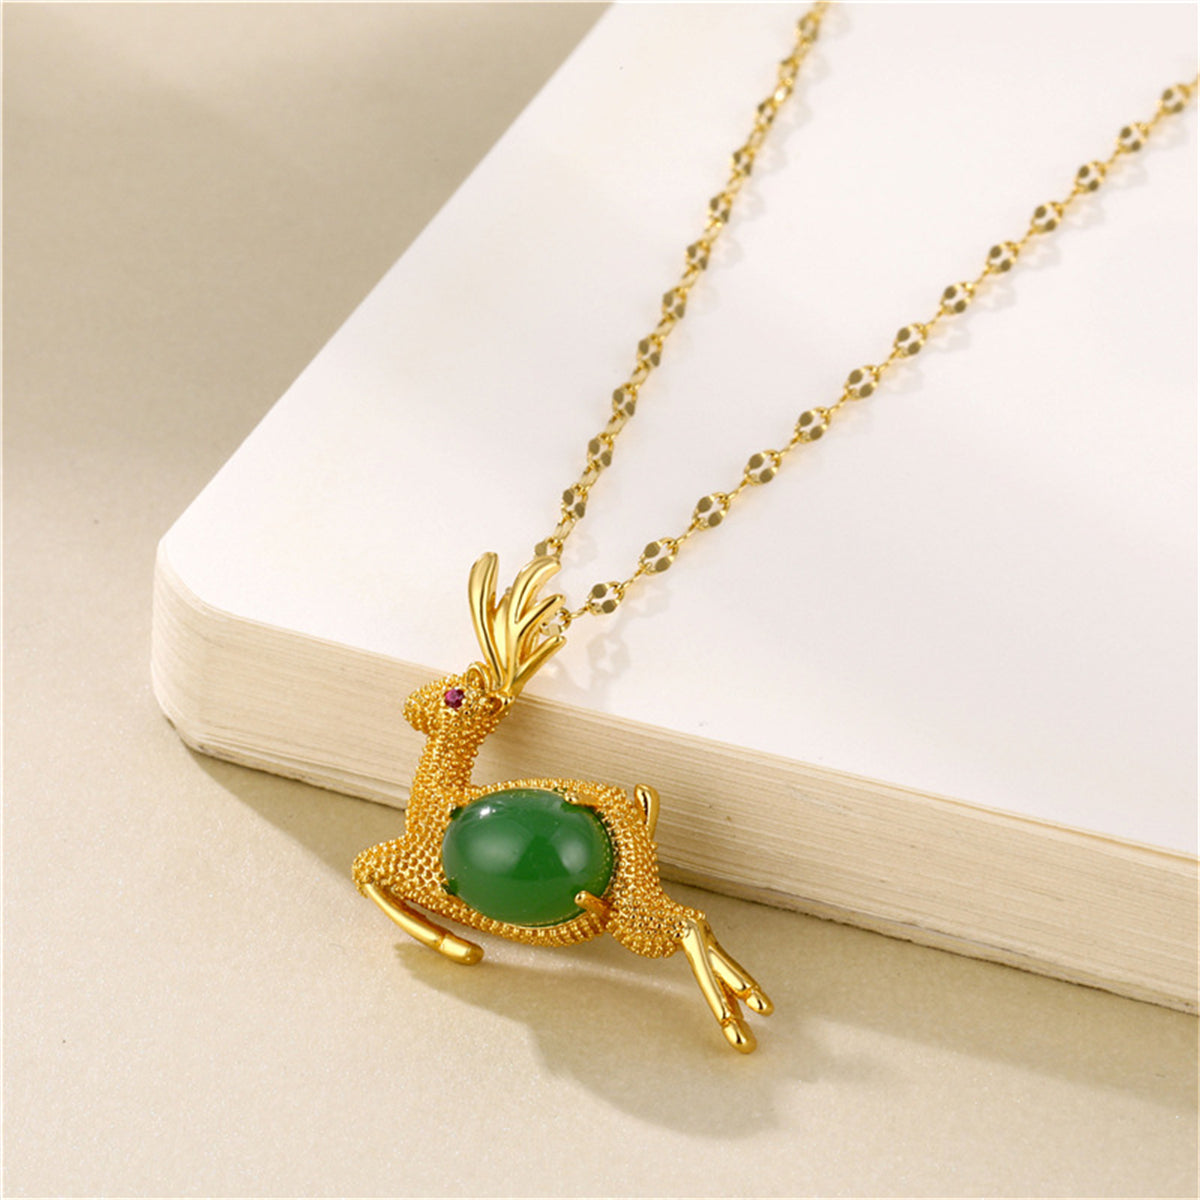 Green Jade & Cubic Zirconia Reindeer Pendant Necklace